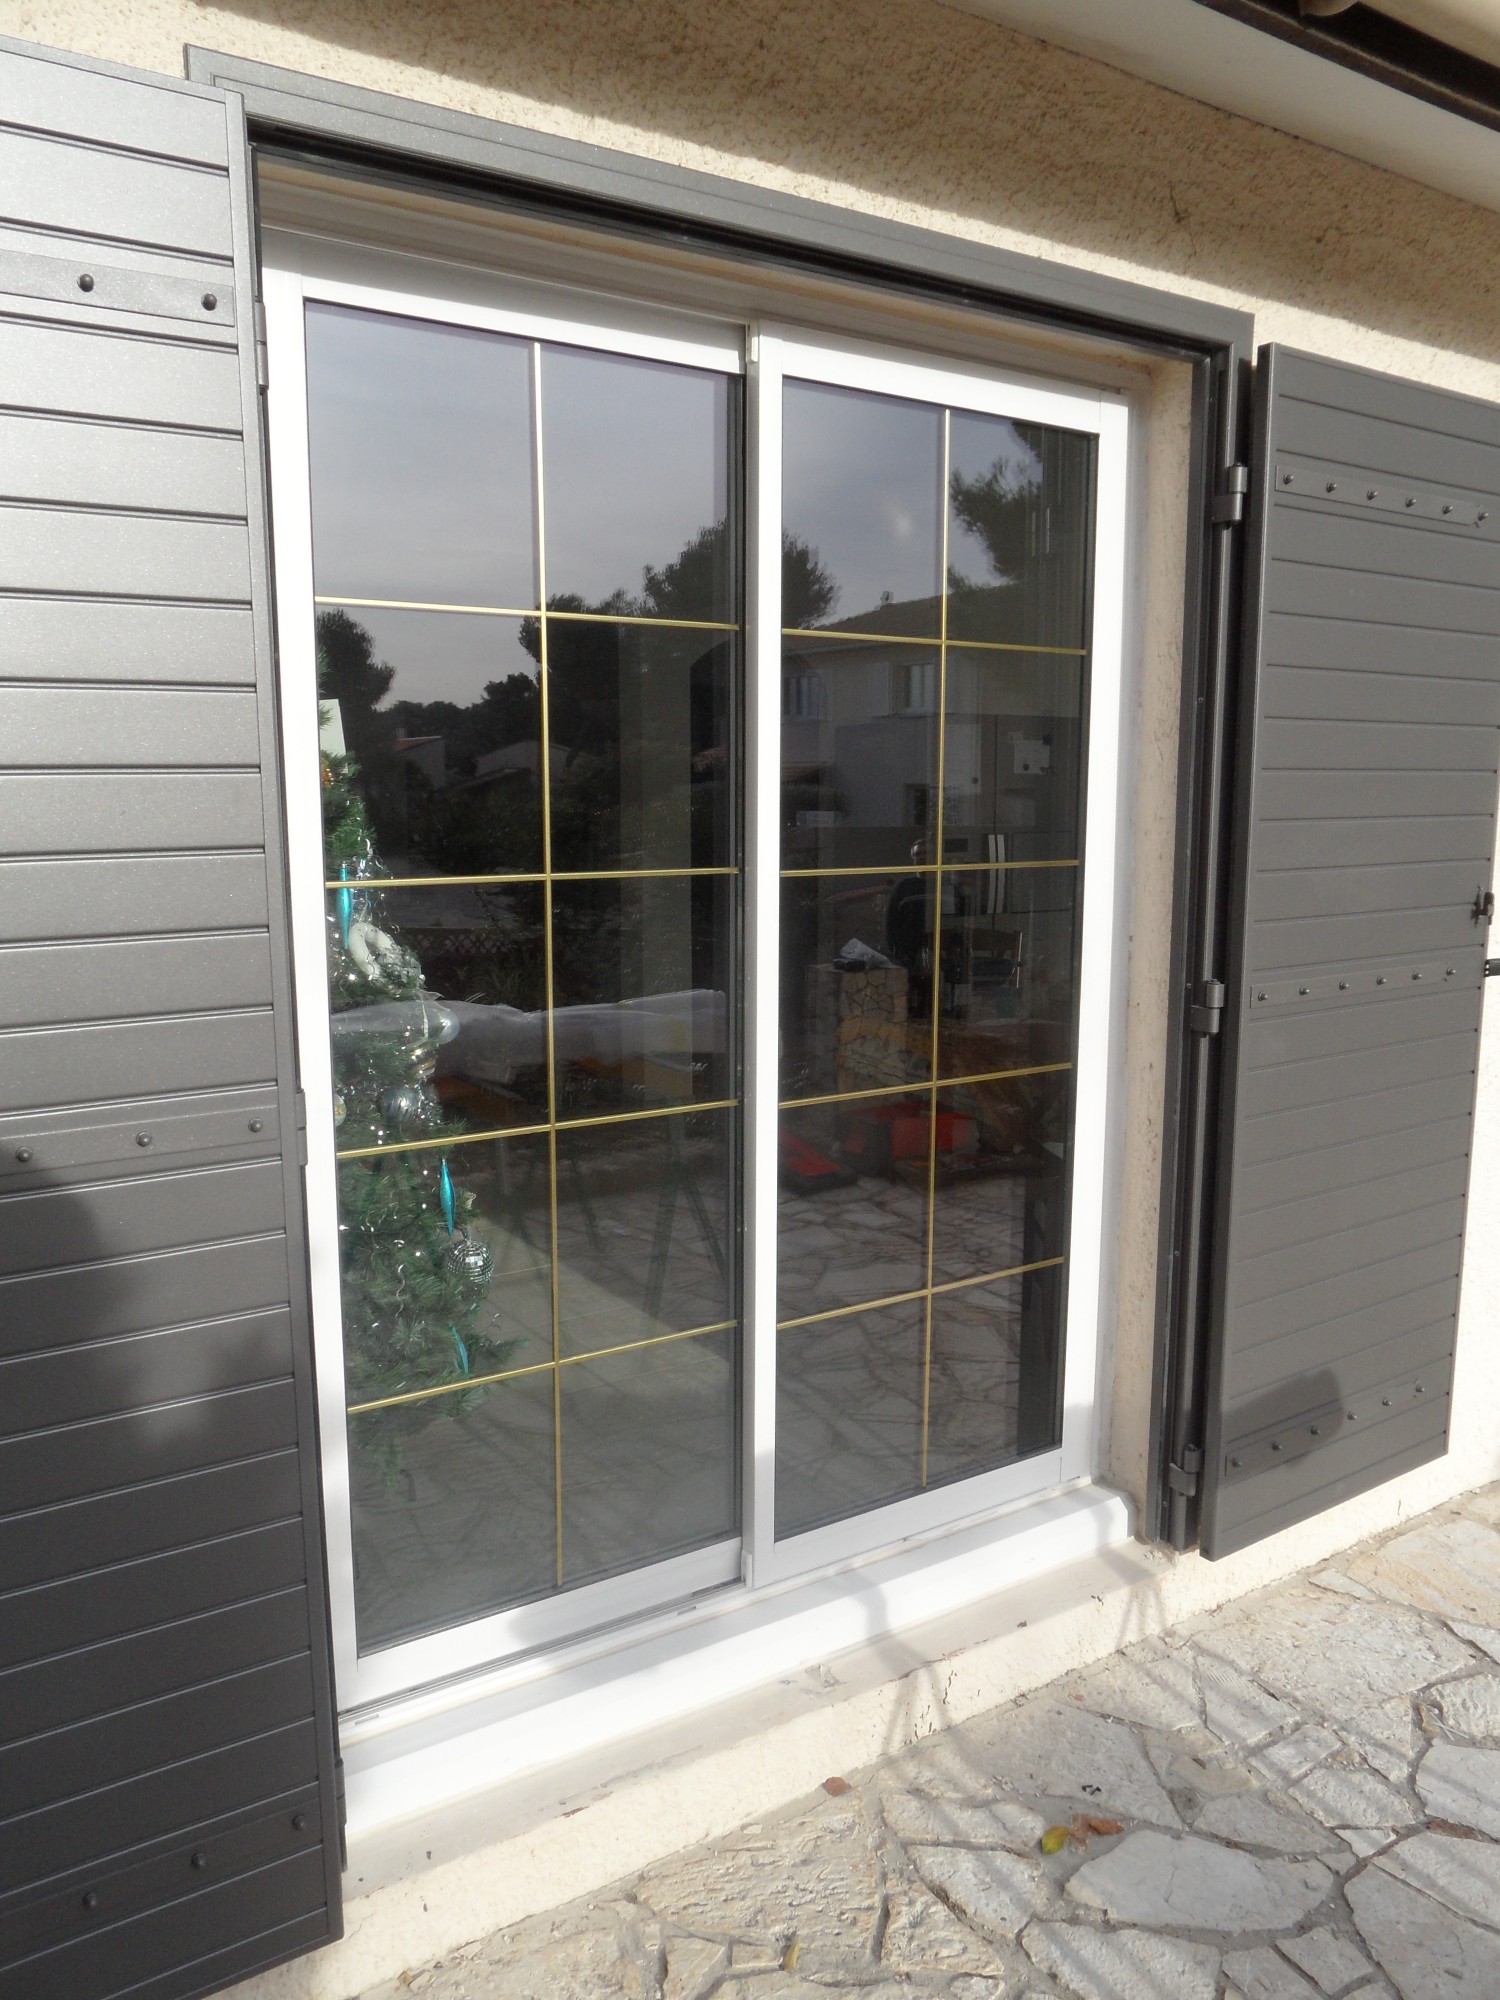 Volets battants en aluminium solides et sûrs pour porte fenêtre 